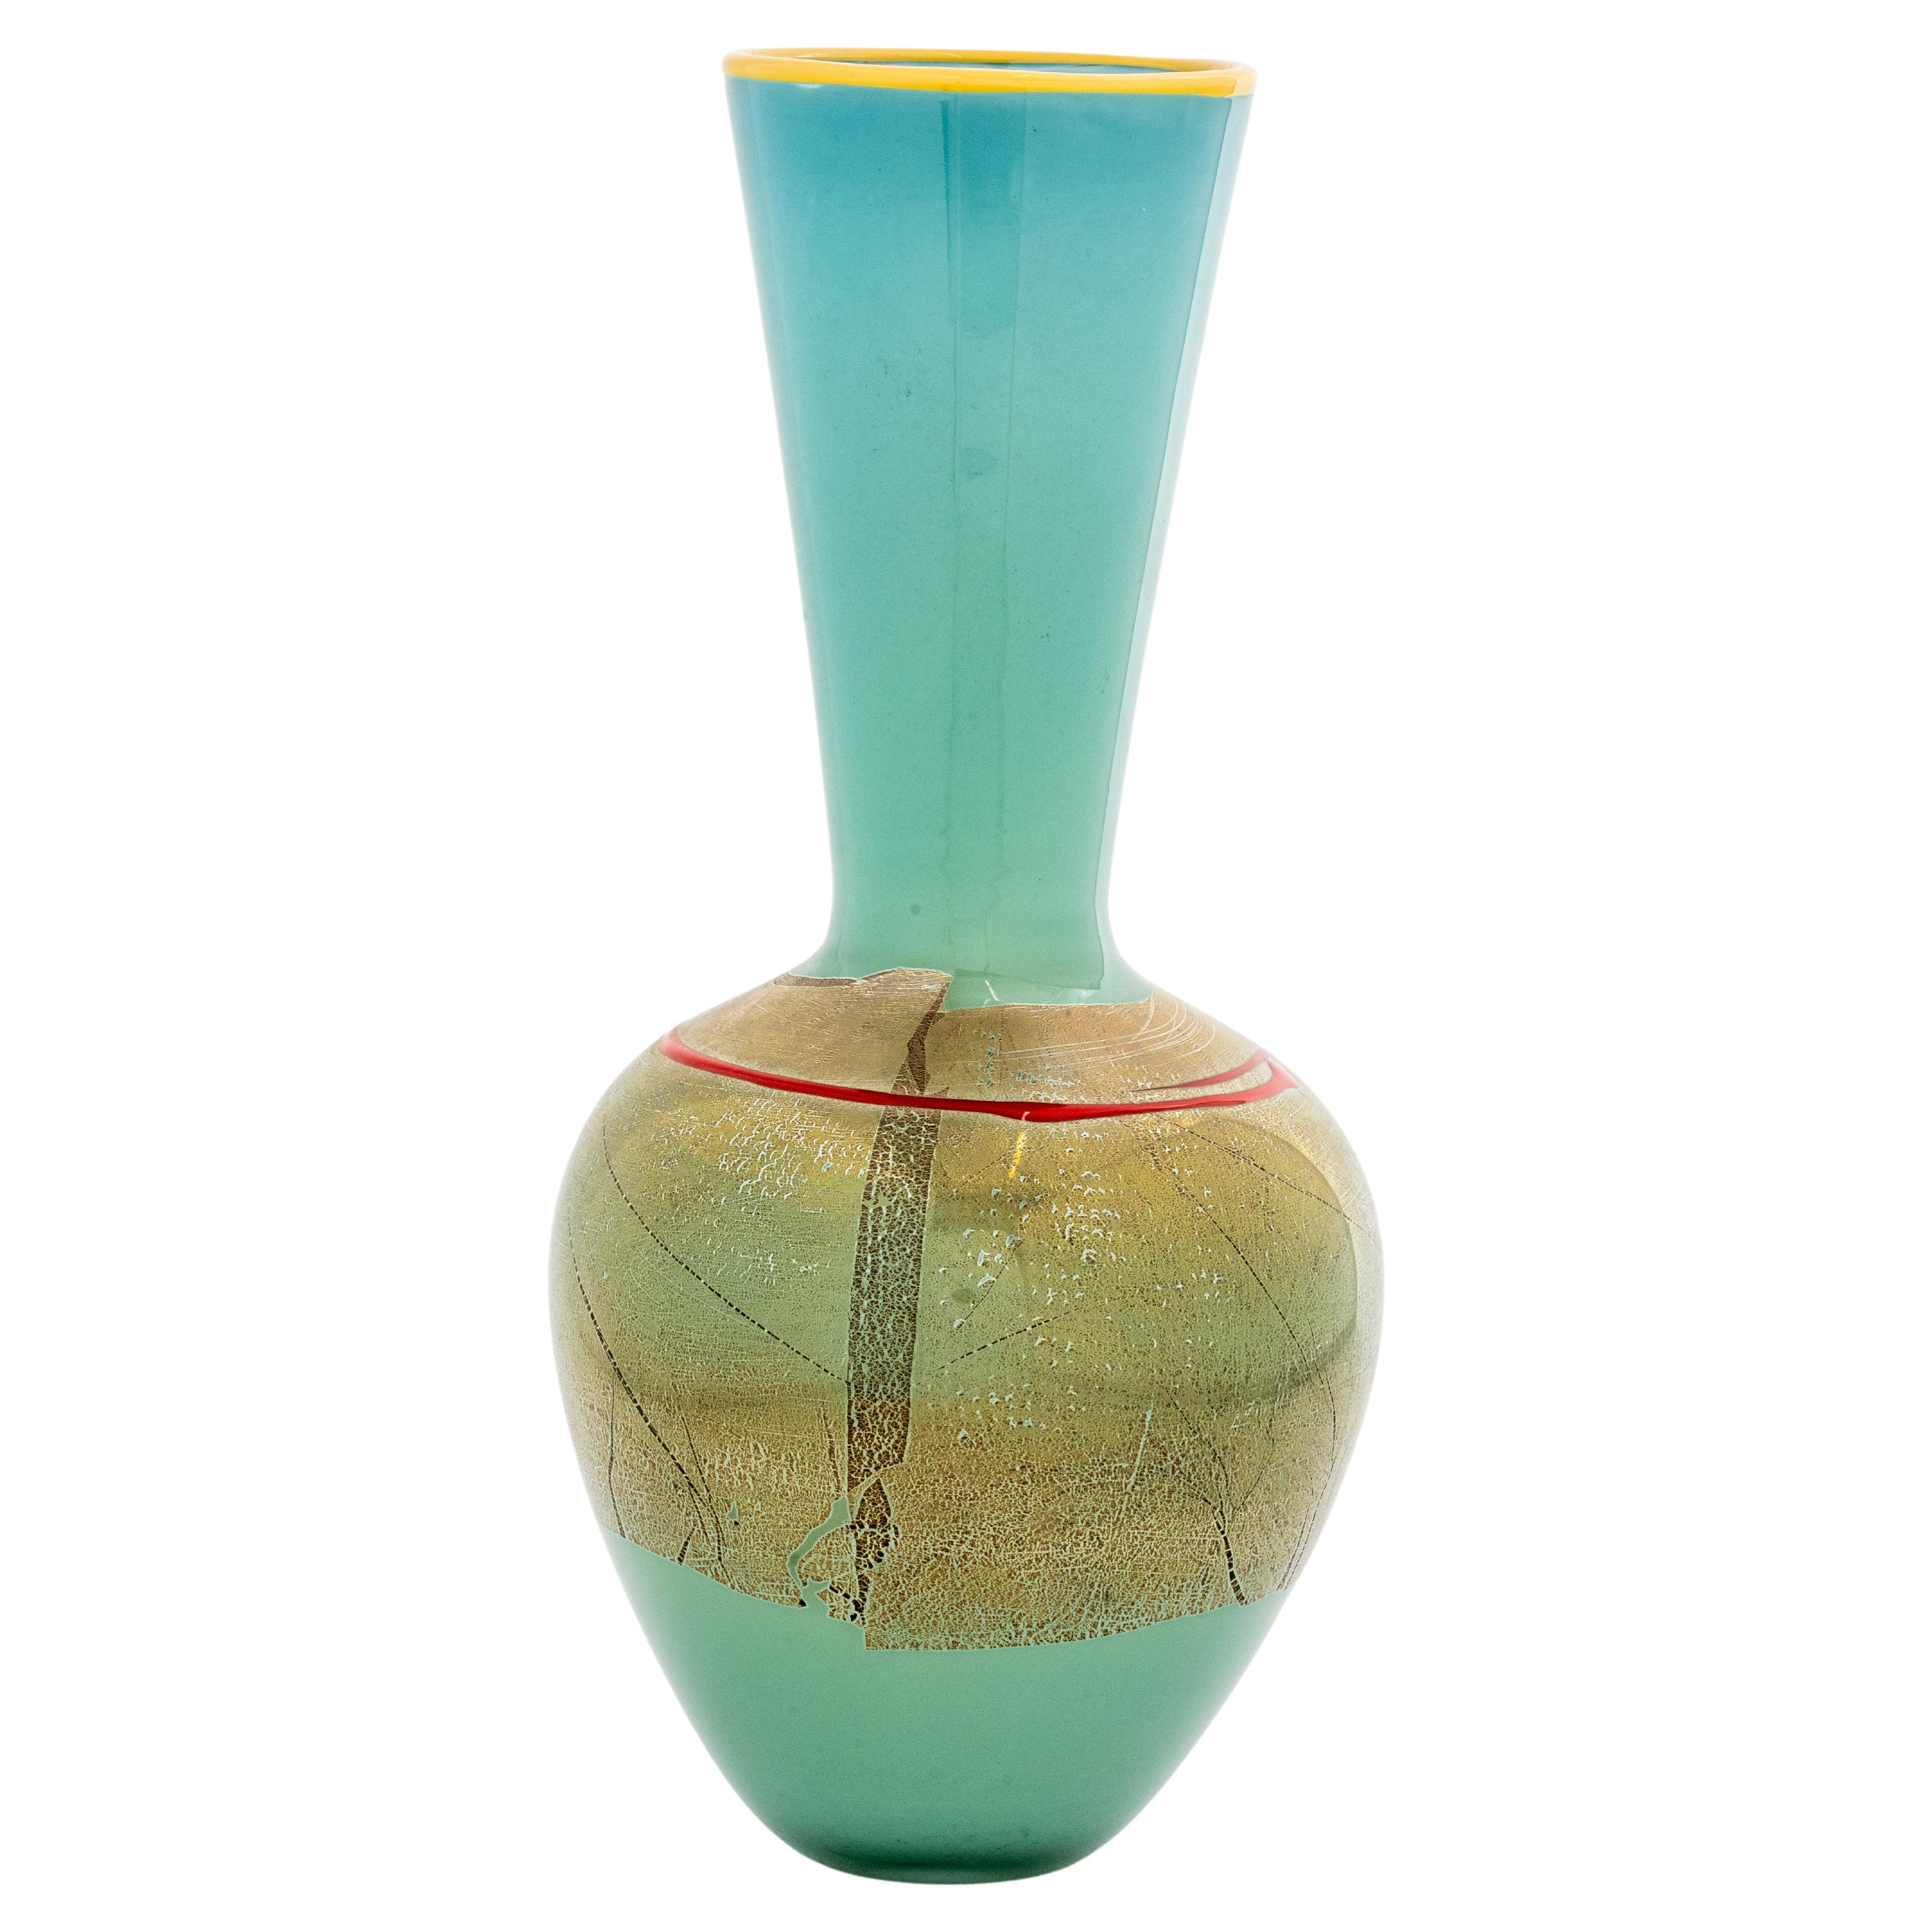 Modernistische Vase aus Kunstglas von Studio Paran, signiert